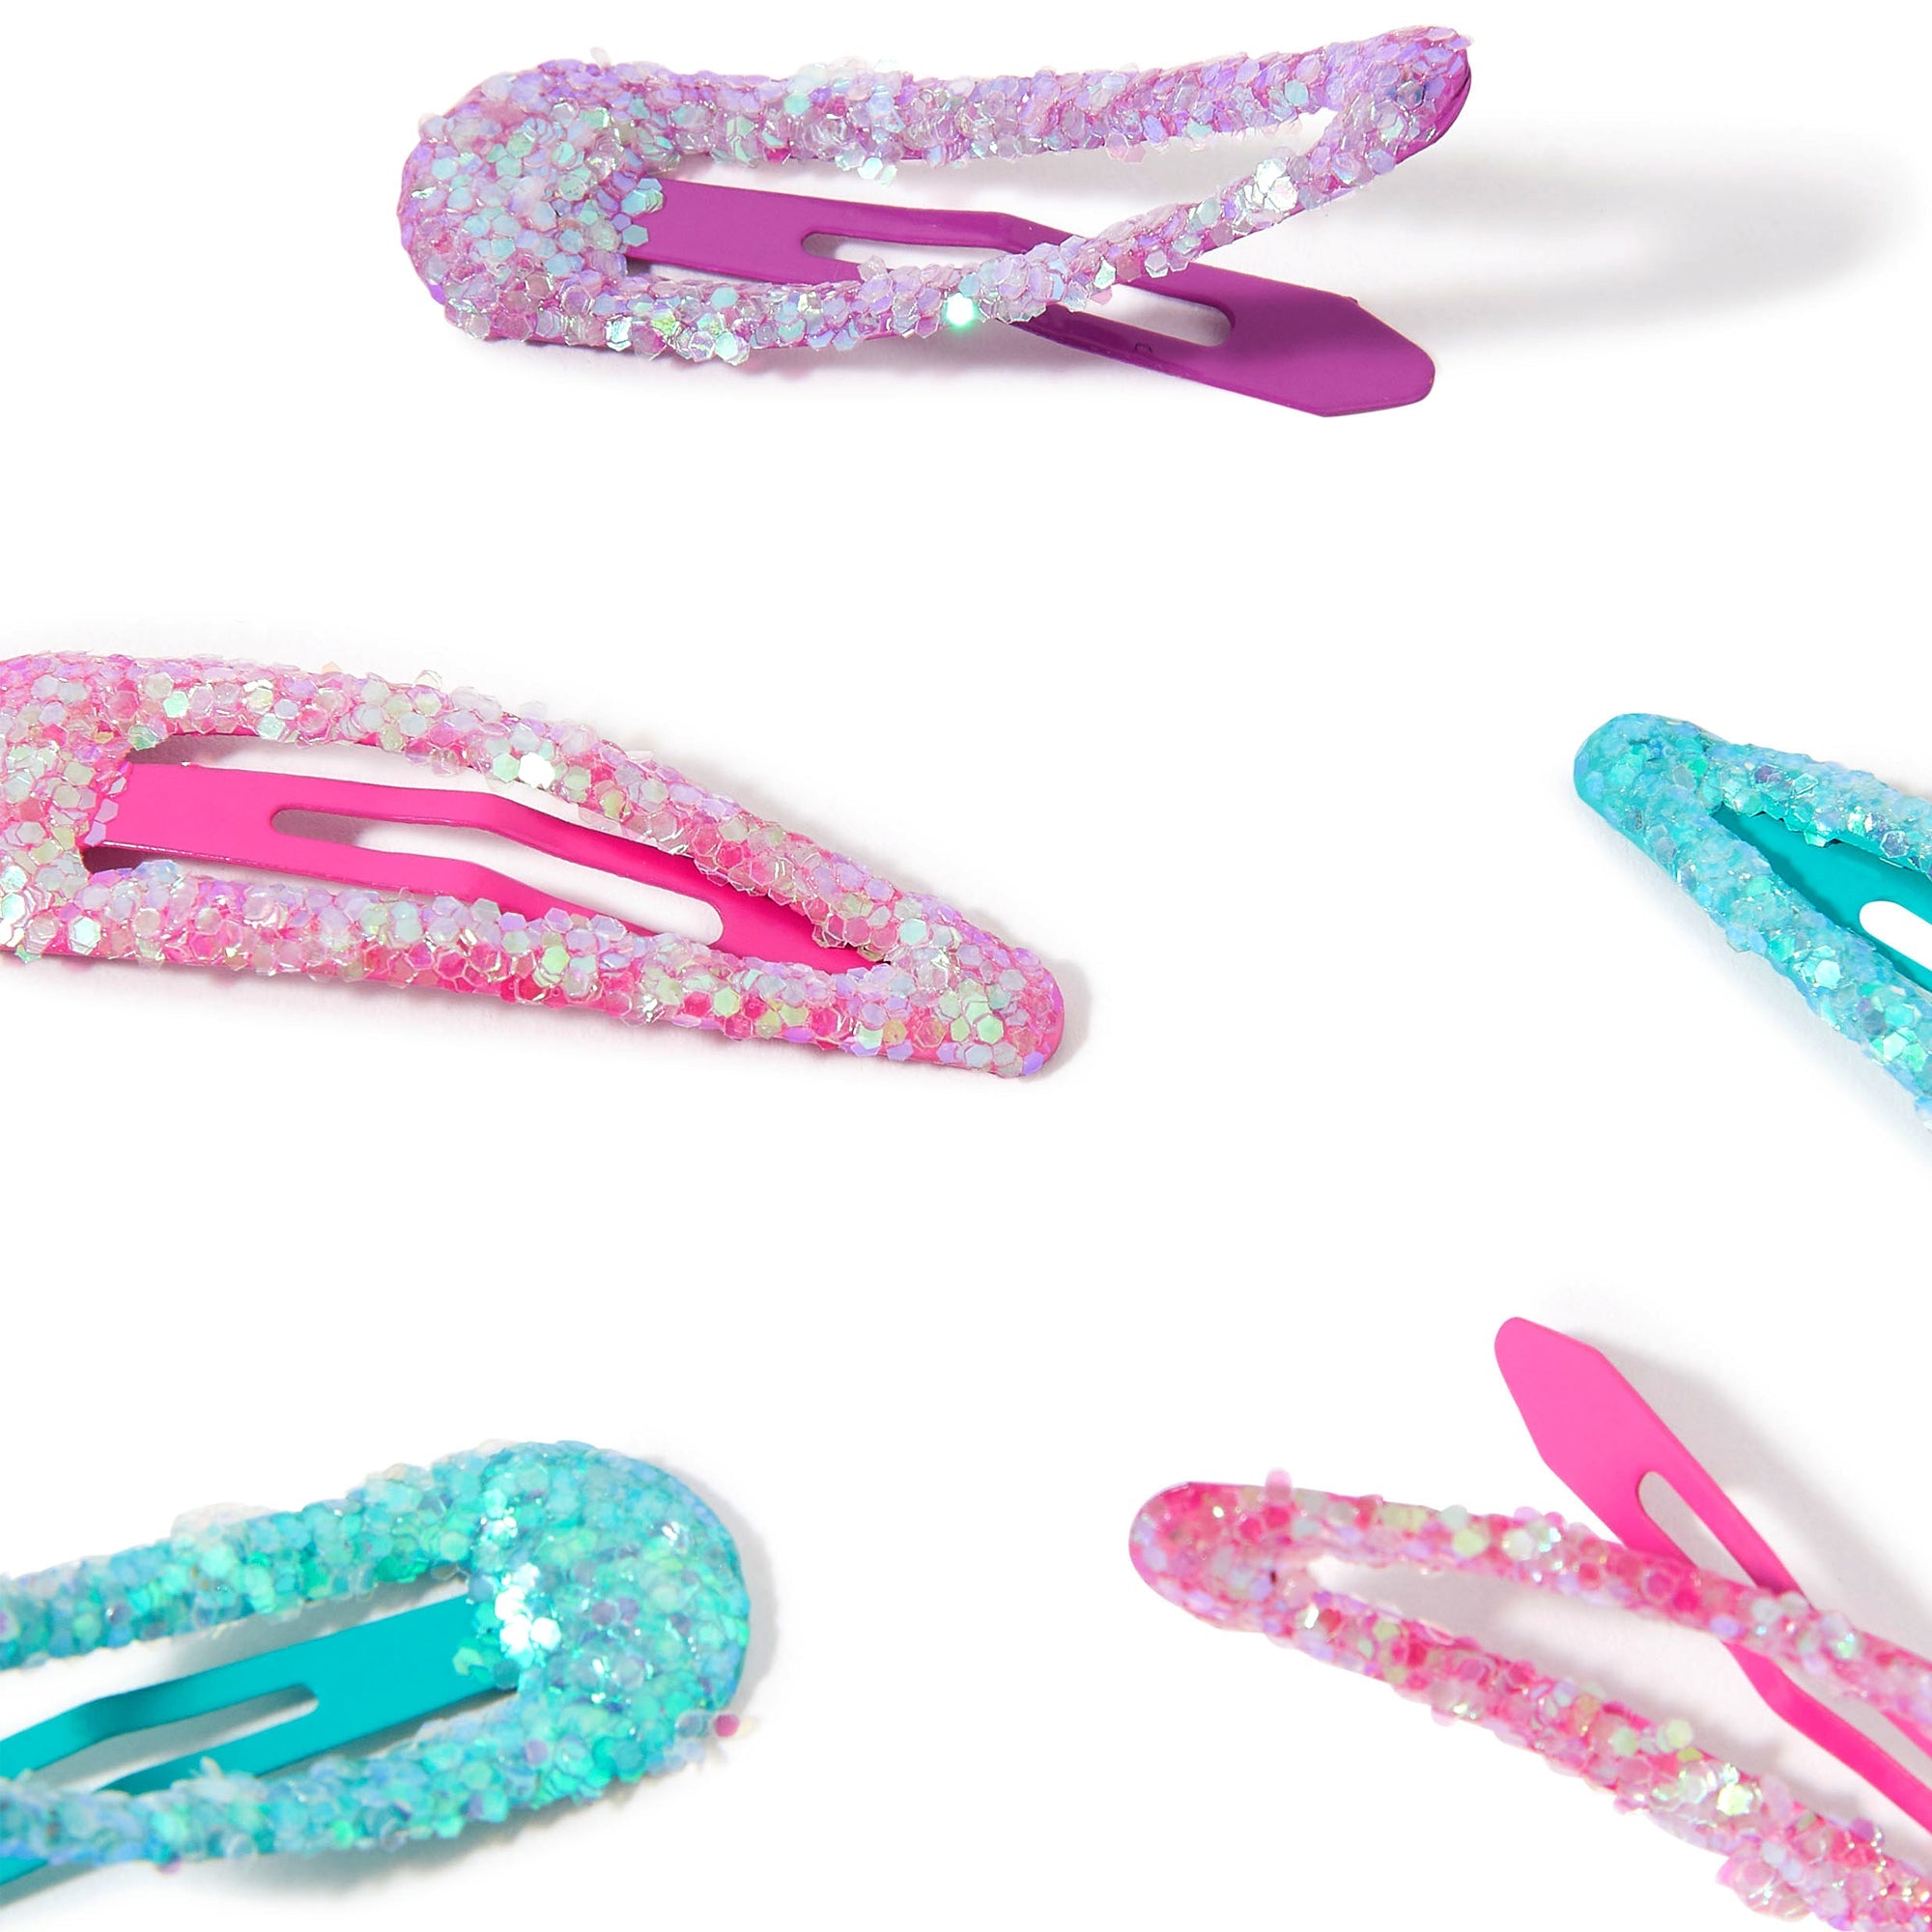 Accessorize London Girl's 6 X Glitter Clic Clacs